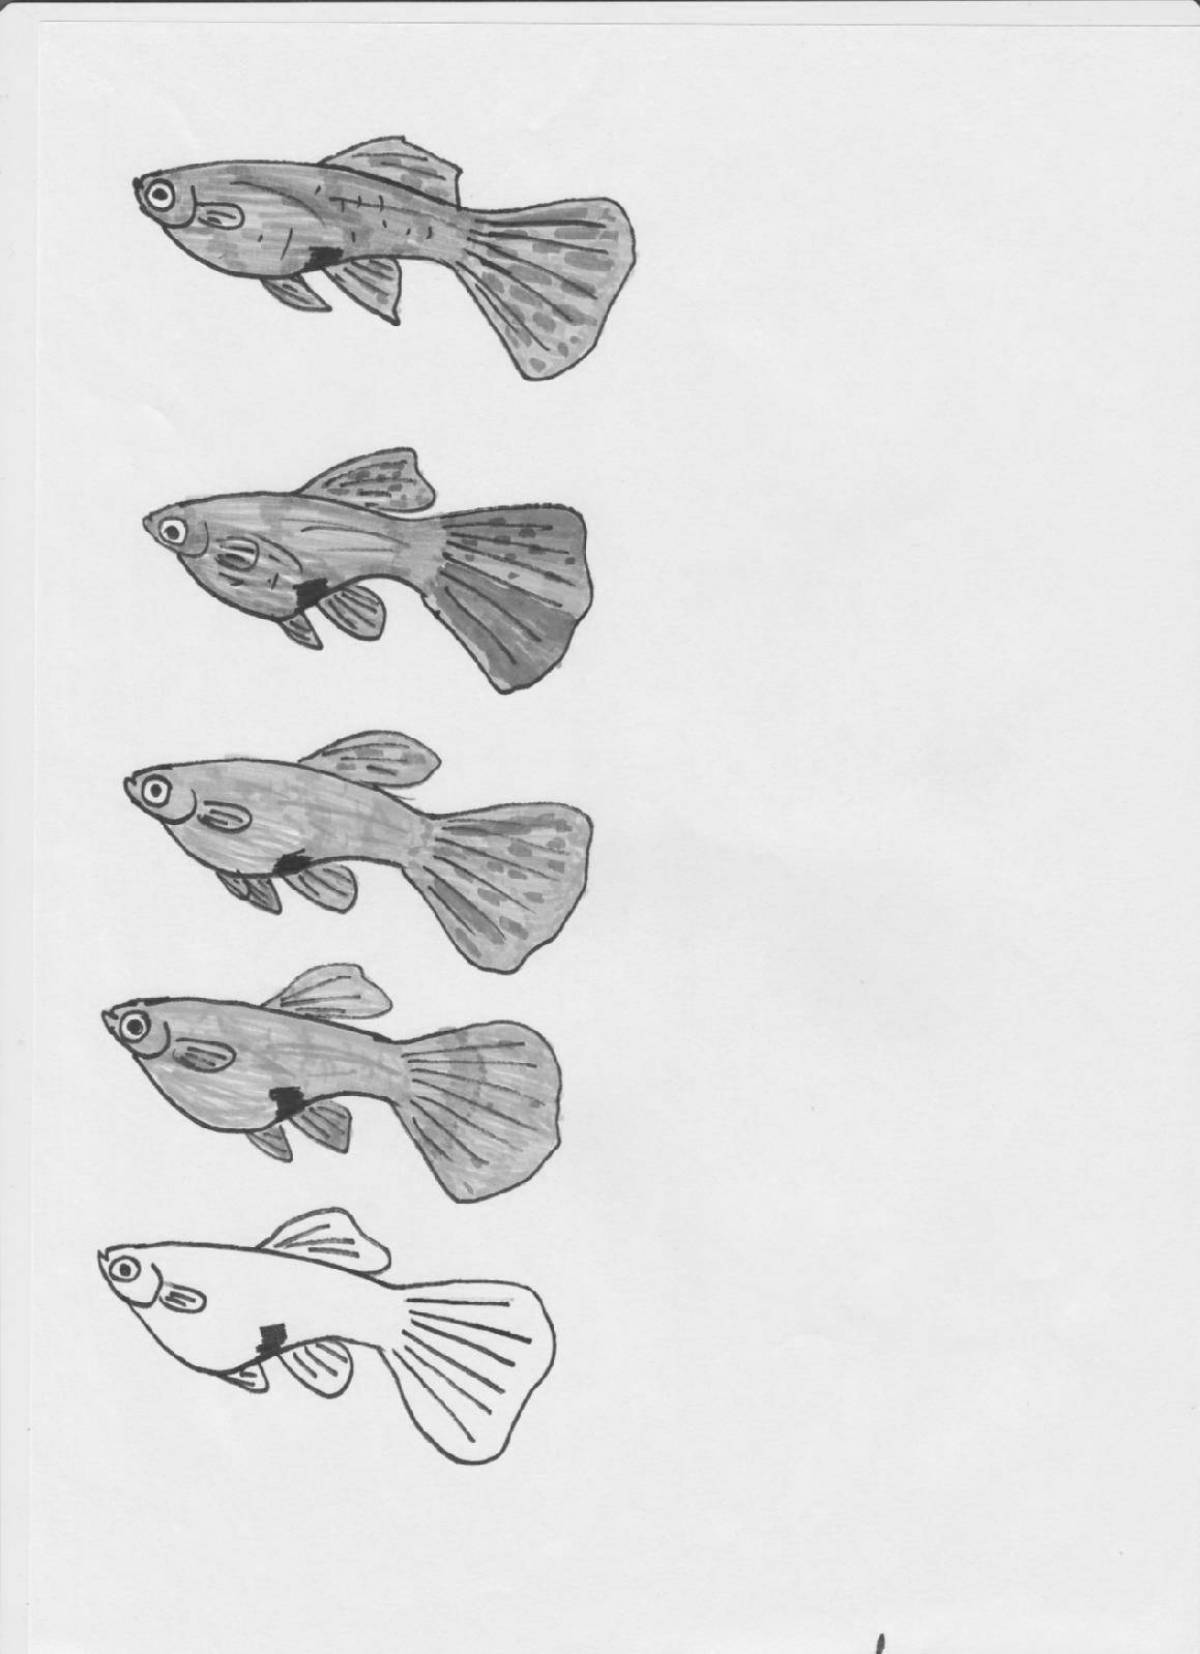 Coloring book happy guppy fish